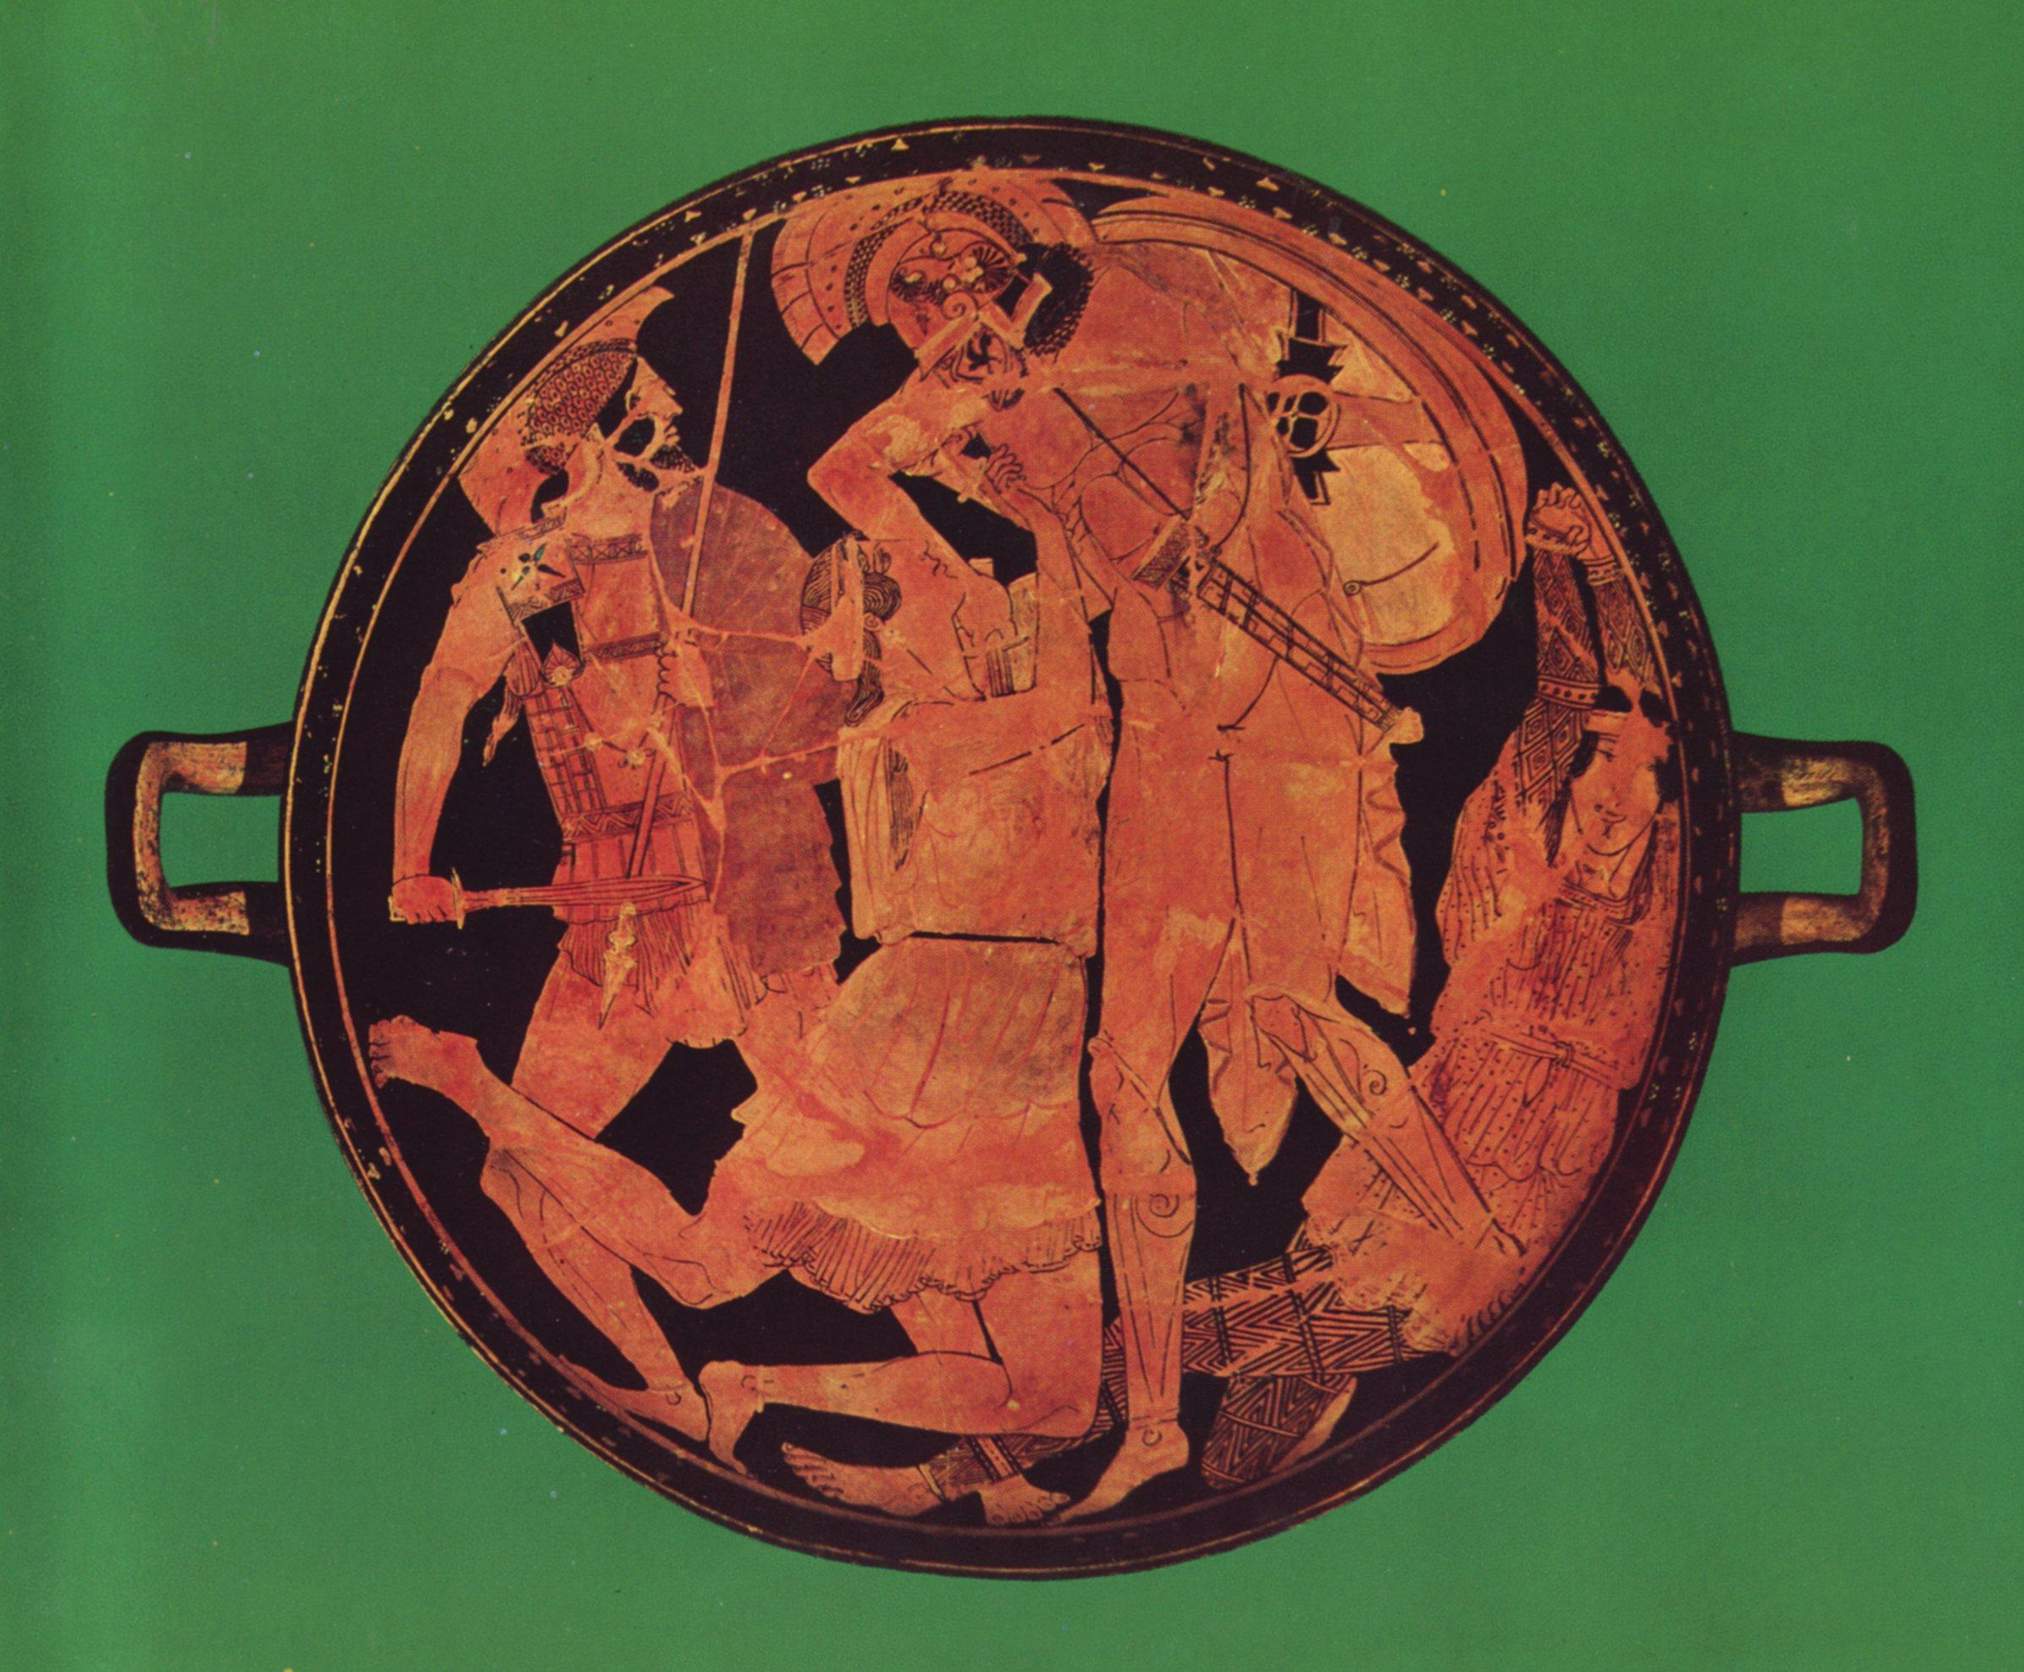 Vase painting: Achilles killing Penthesilea